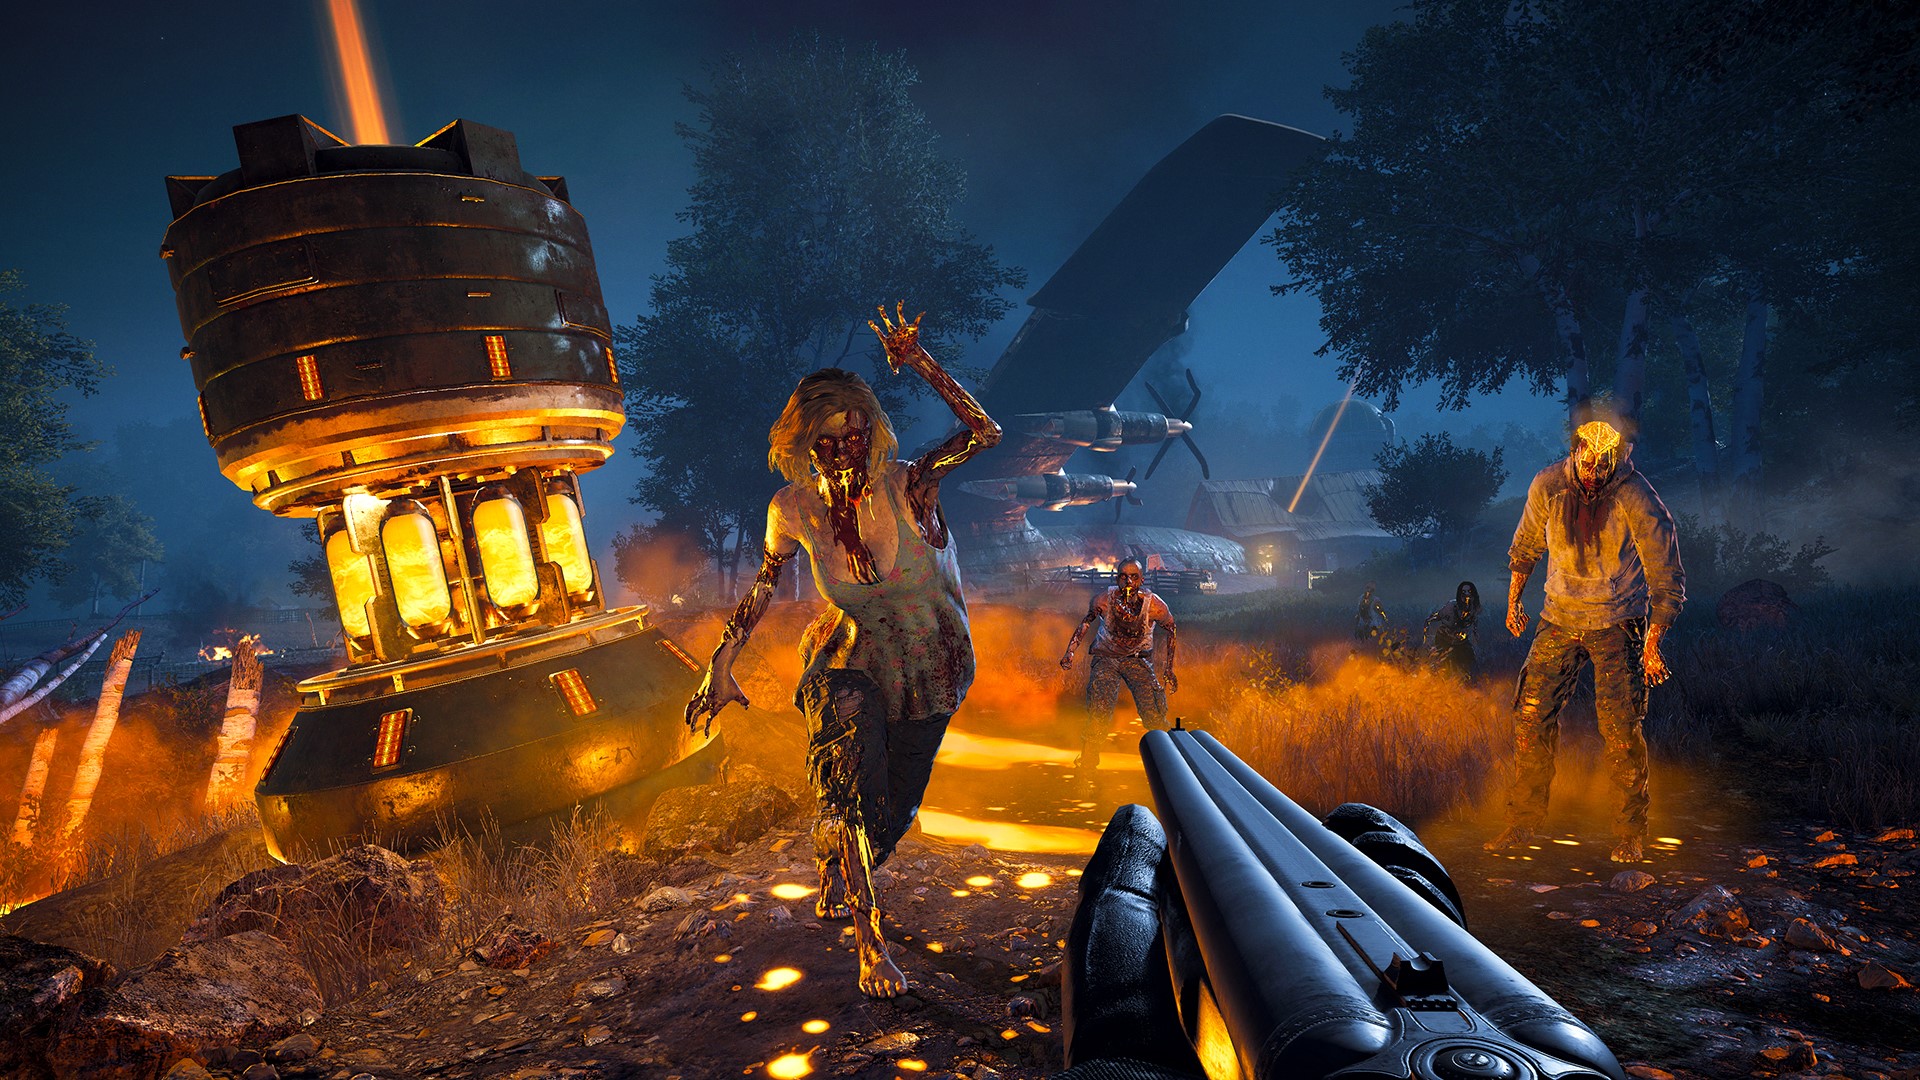 Скриншот ✅ Far Cry 5 🏹 XBOX ONE X|S Ключ / Цифровой код 🔑